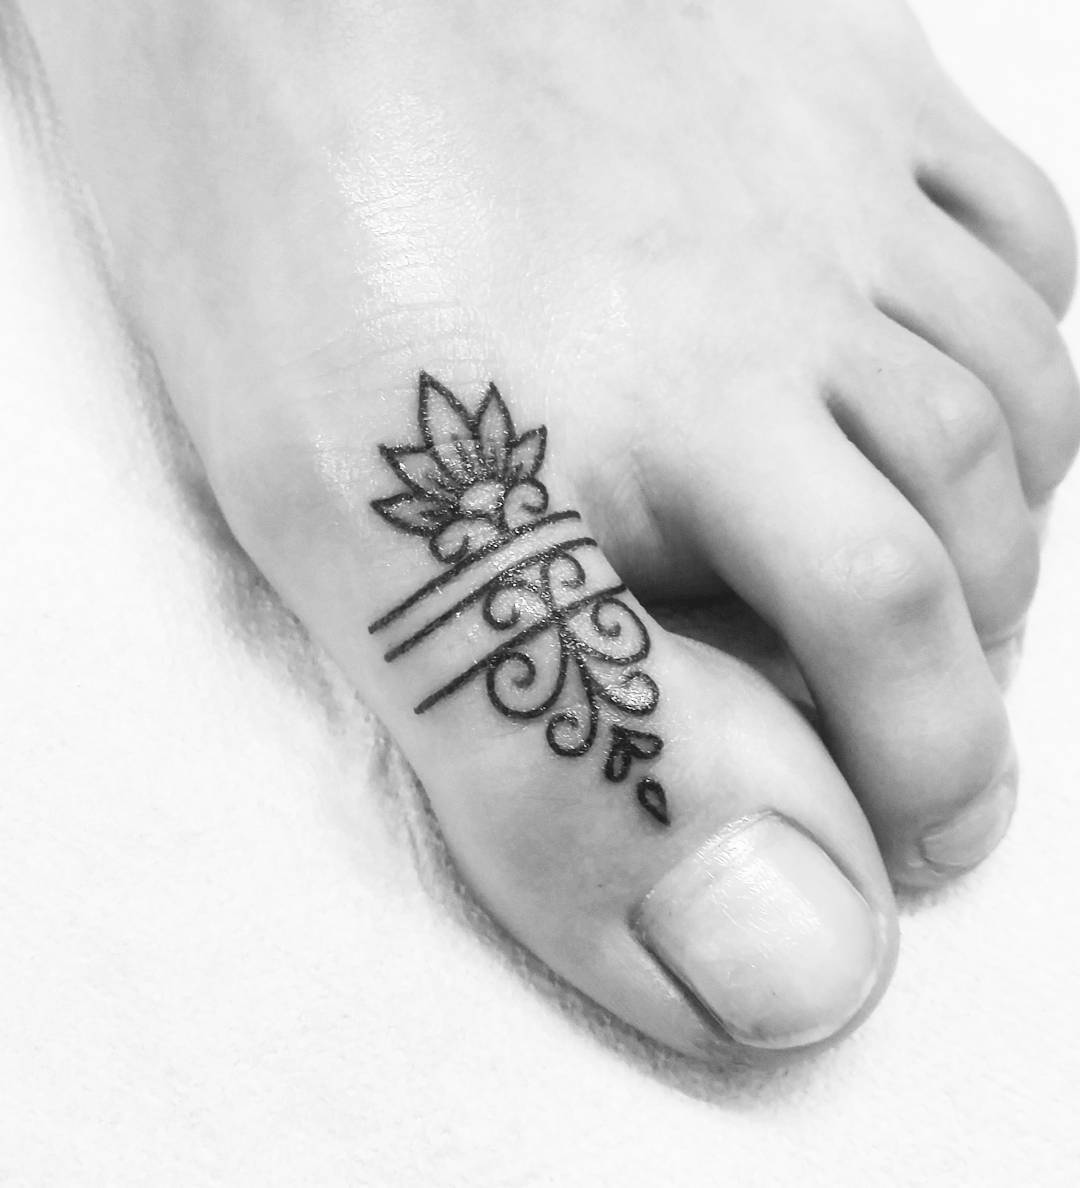 Tatuaggio piede dito pollice by @valebennybenassi